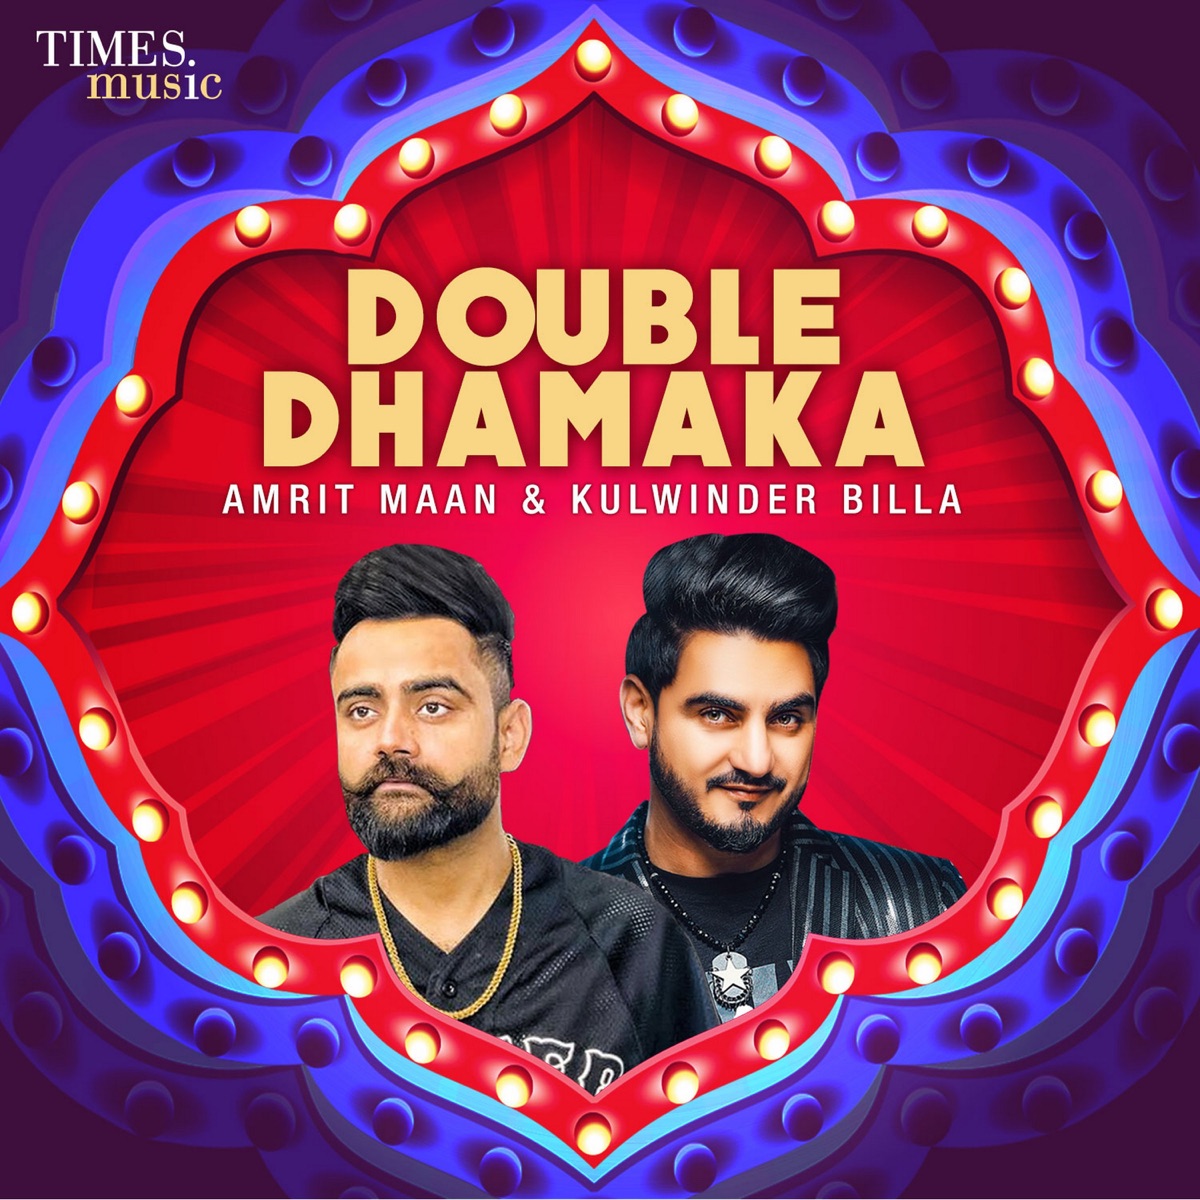 Double Dhamaka - Album by Kulwinder Billa & Amrit Maan - Apple Music